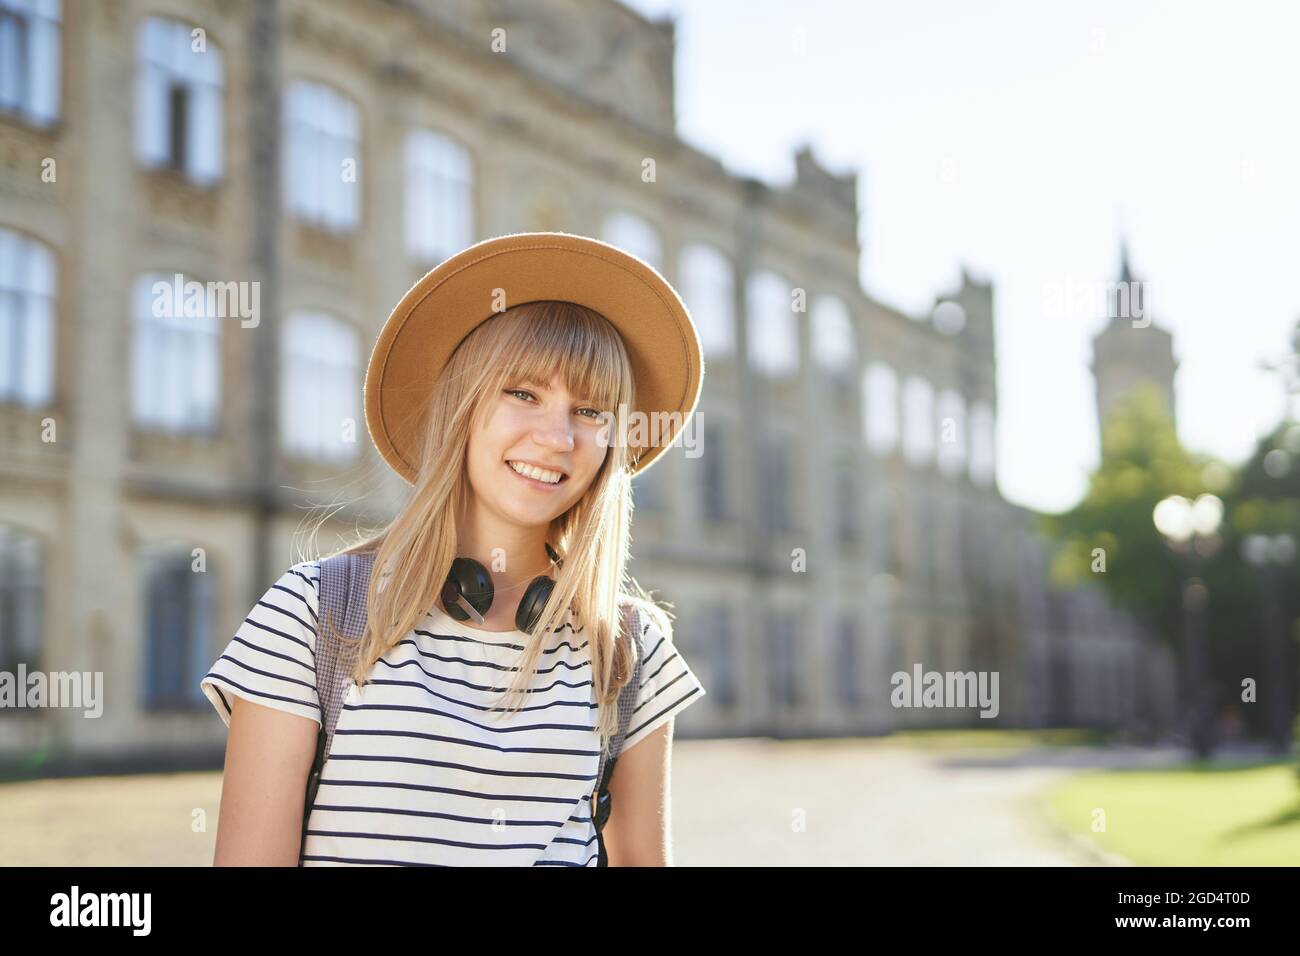 Fröhlich lächelnd junge blonde europäische Universitäts- oder Hochschulstudentin mit braunem Hut auf dem Campus. Nettes Schulmädchen, Studentenportrait oder Bildungskonzept. Hochwertige Bilder Stockfoto